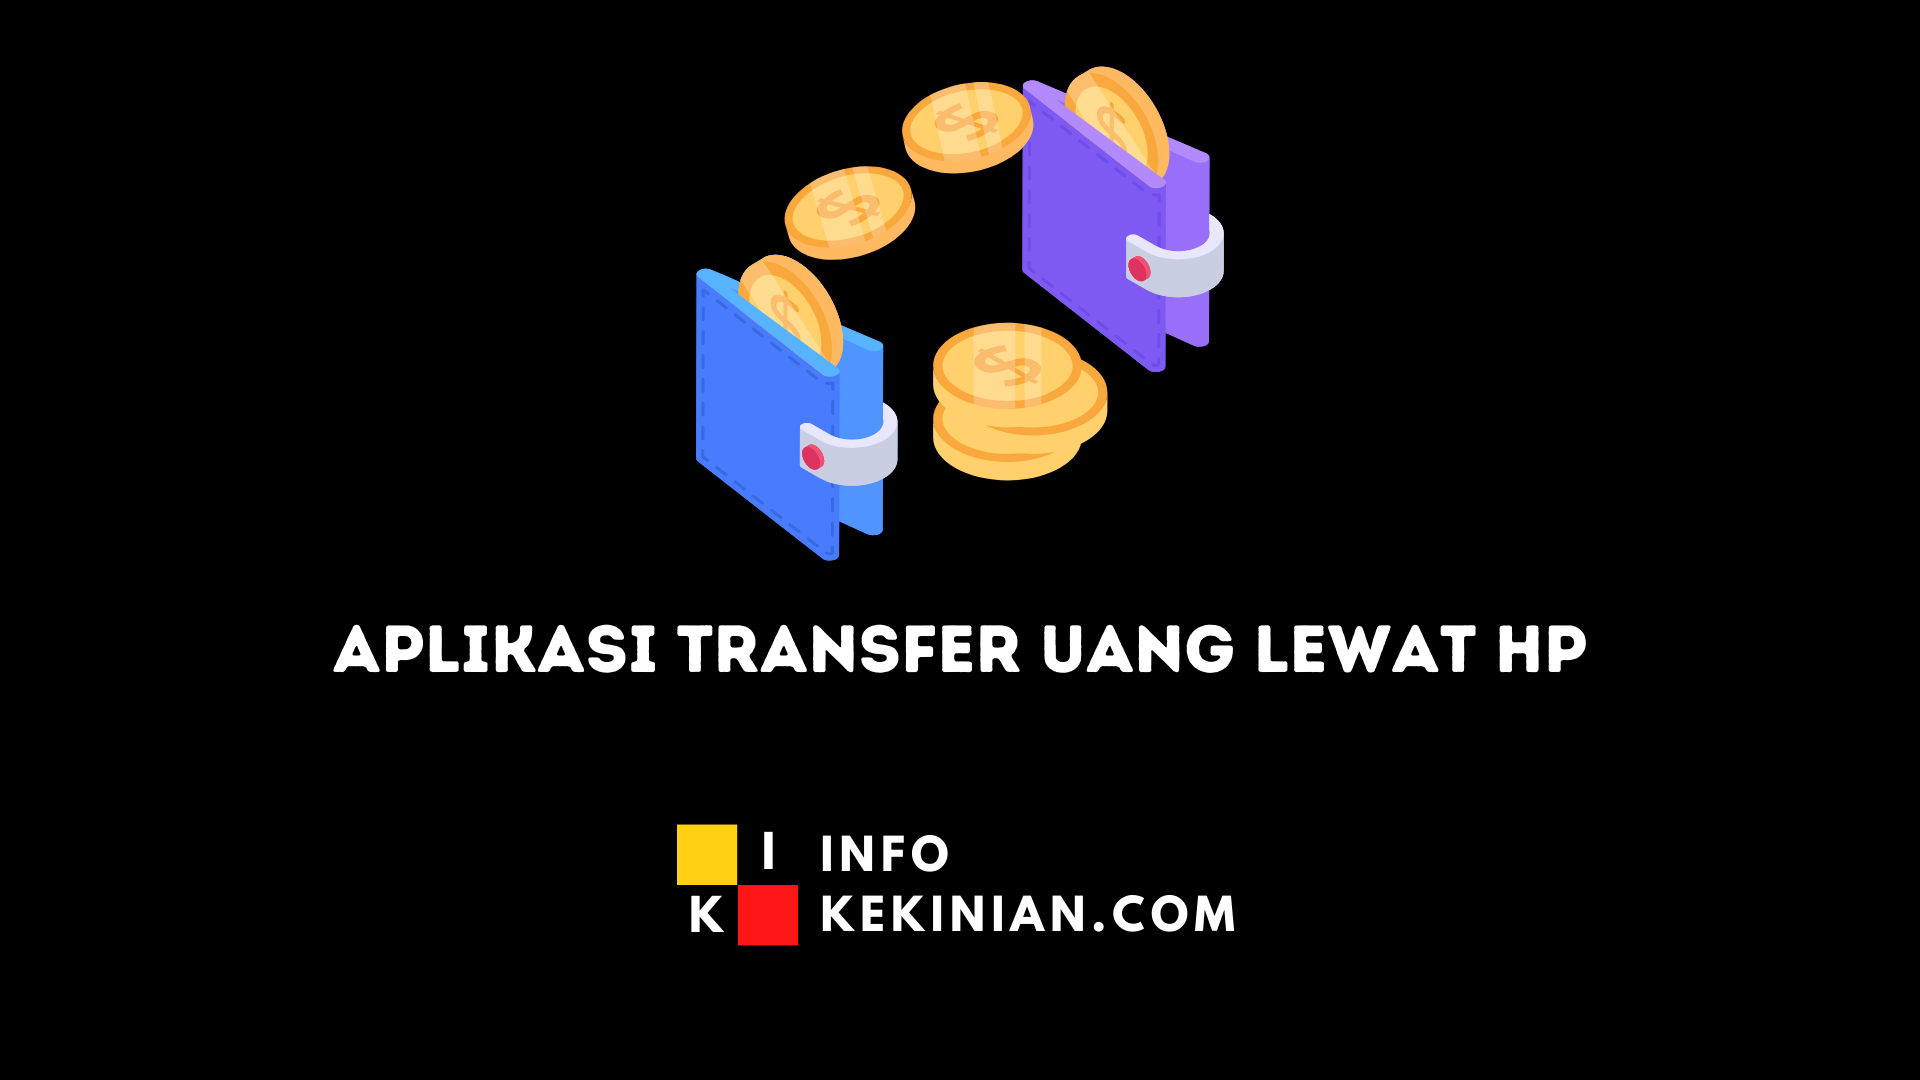 Aplicación de transferencia de dinero fácil a través del móvil